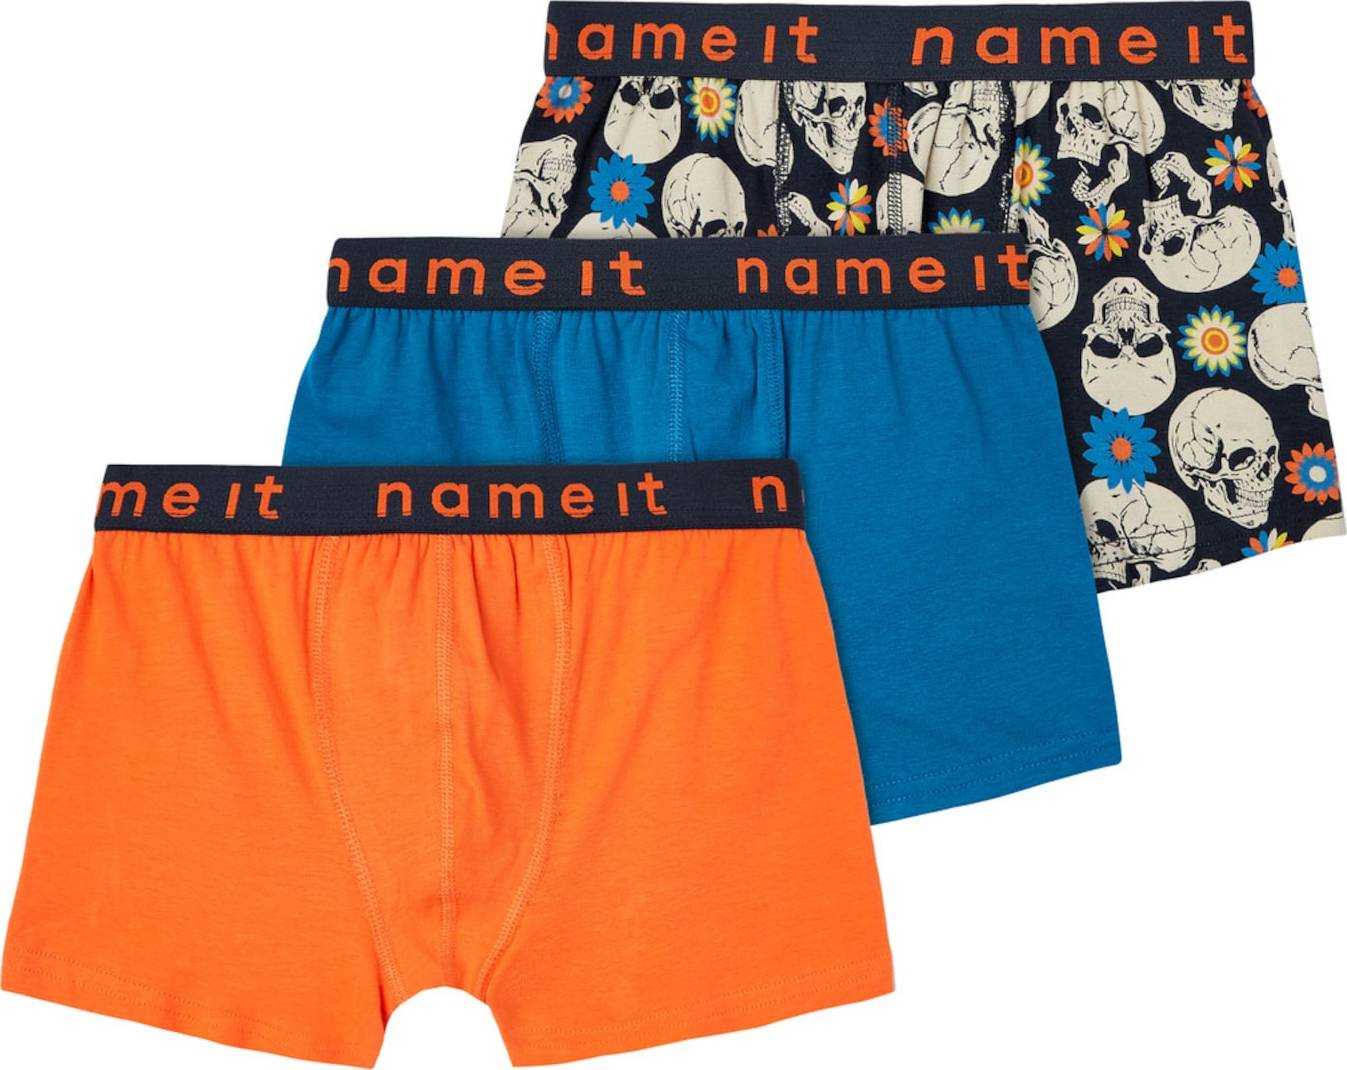 NAME IT Spodní prádlo krémová / modrá / žlutá / oranžová / černá